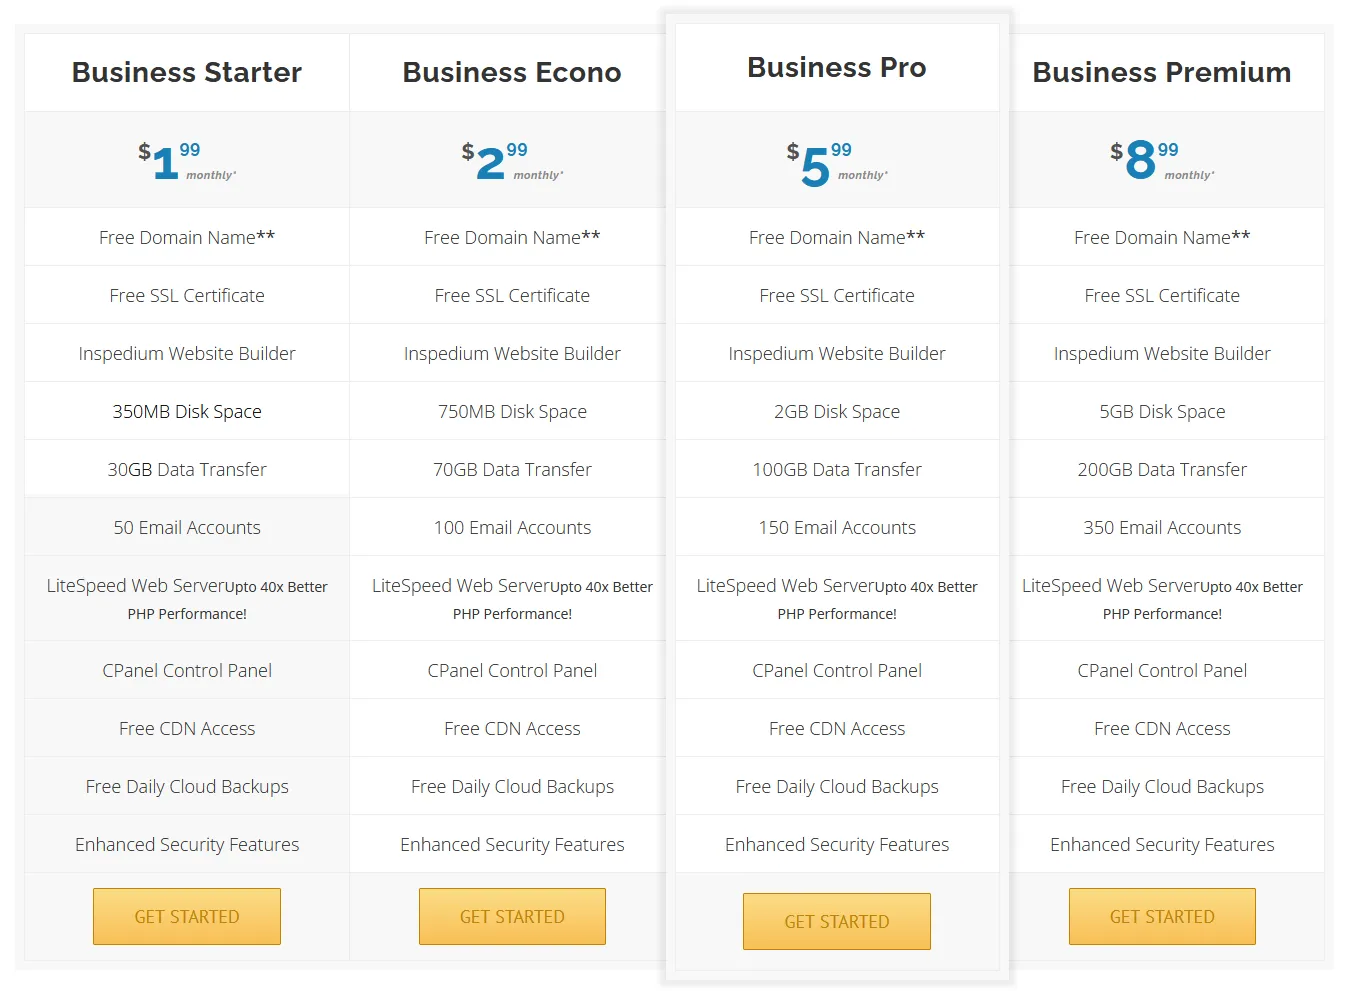 Inspedium offers 4 business hosting plans i.e. Business Starter, Business Econo, Business Pro, Business Premium.